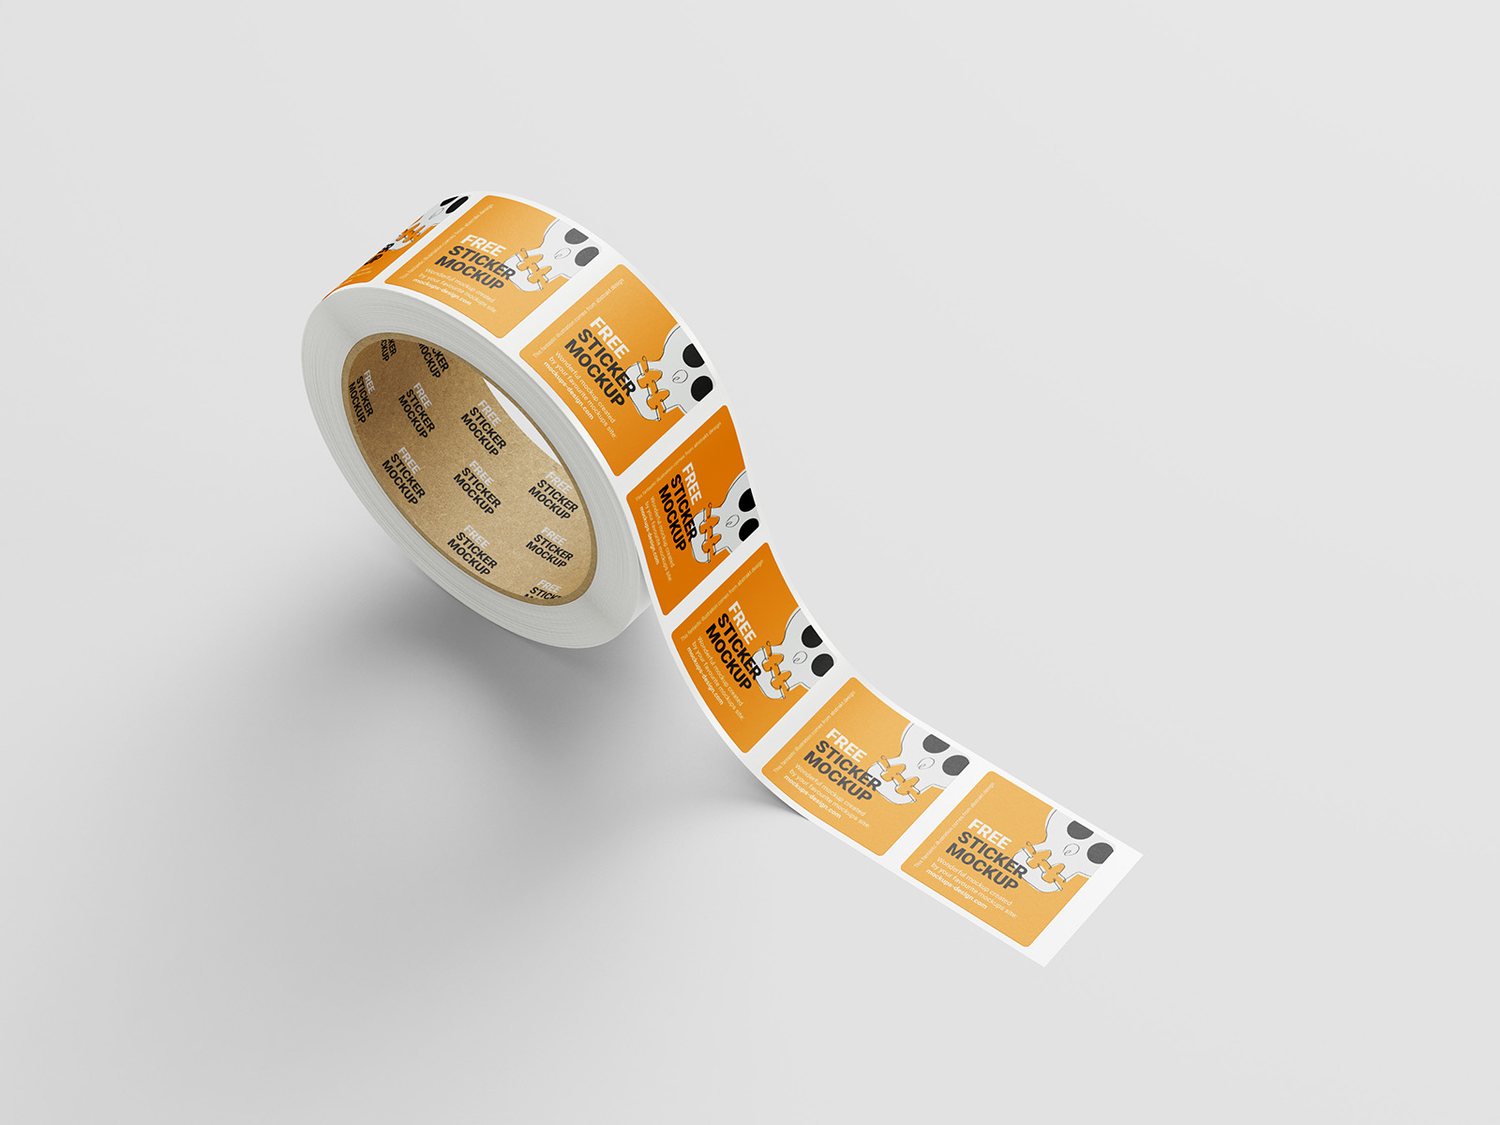 4880 5款可商用极简正方形贴纸纸卷设计展示PSD样机 square sticker roll mockup